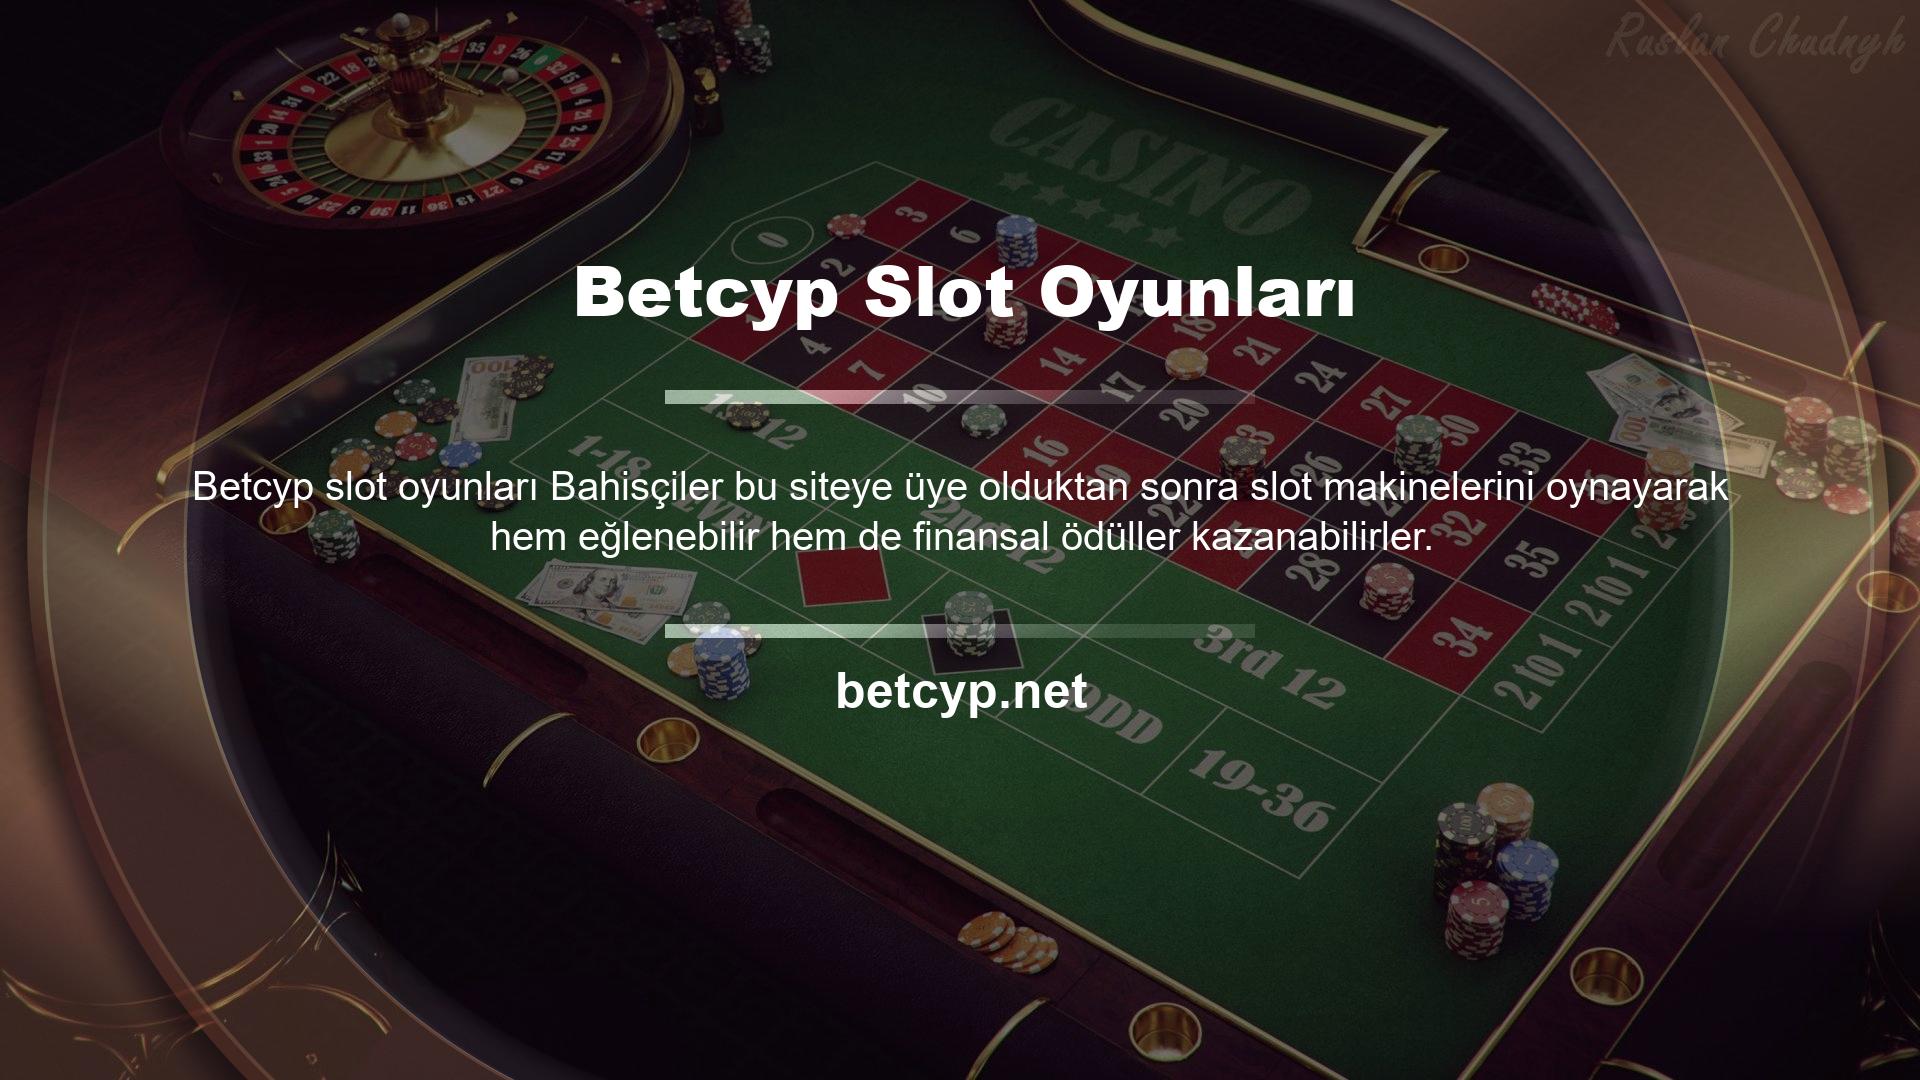 Betcyp slot oyunu birçok kullanıcının sıklıkla keyif aldığı oyunlardan biridir